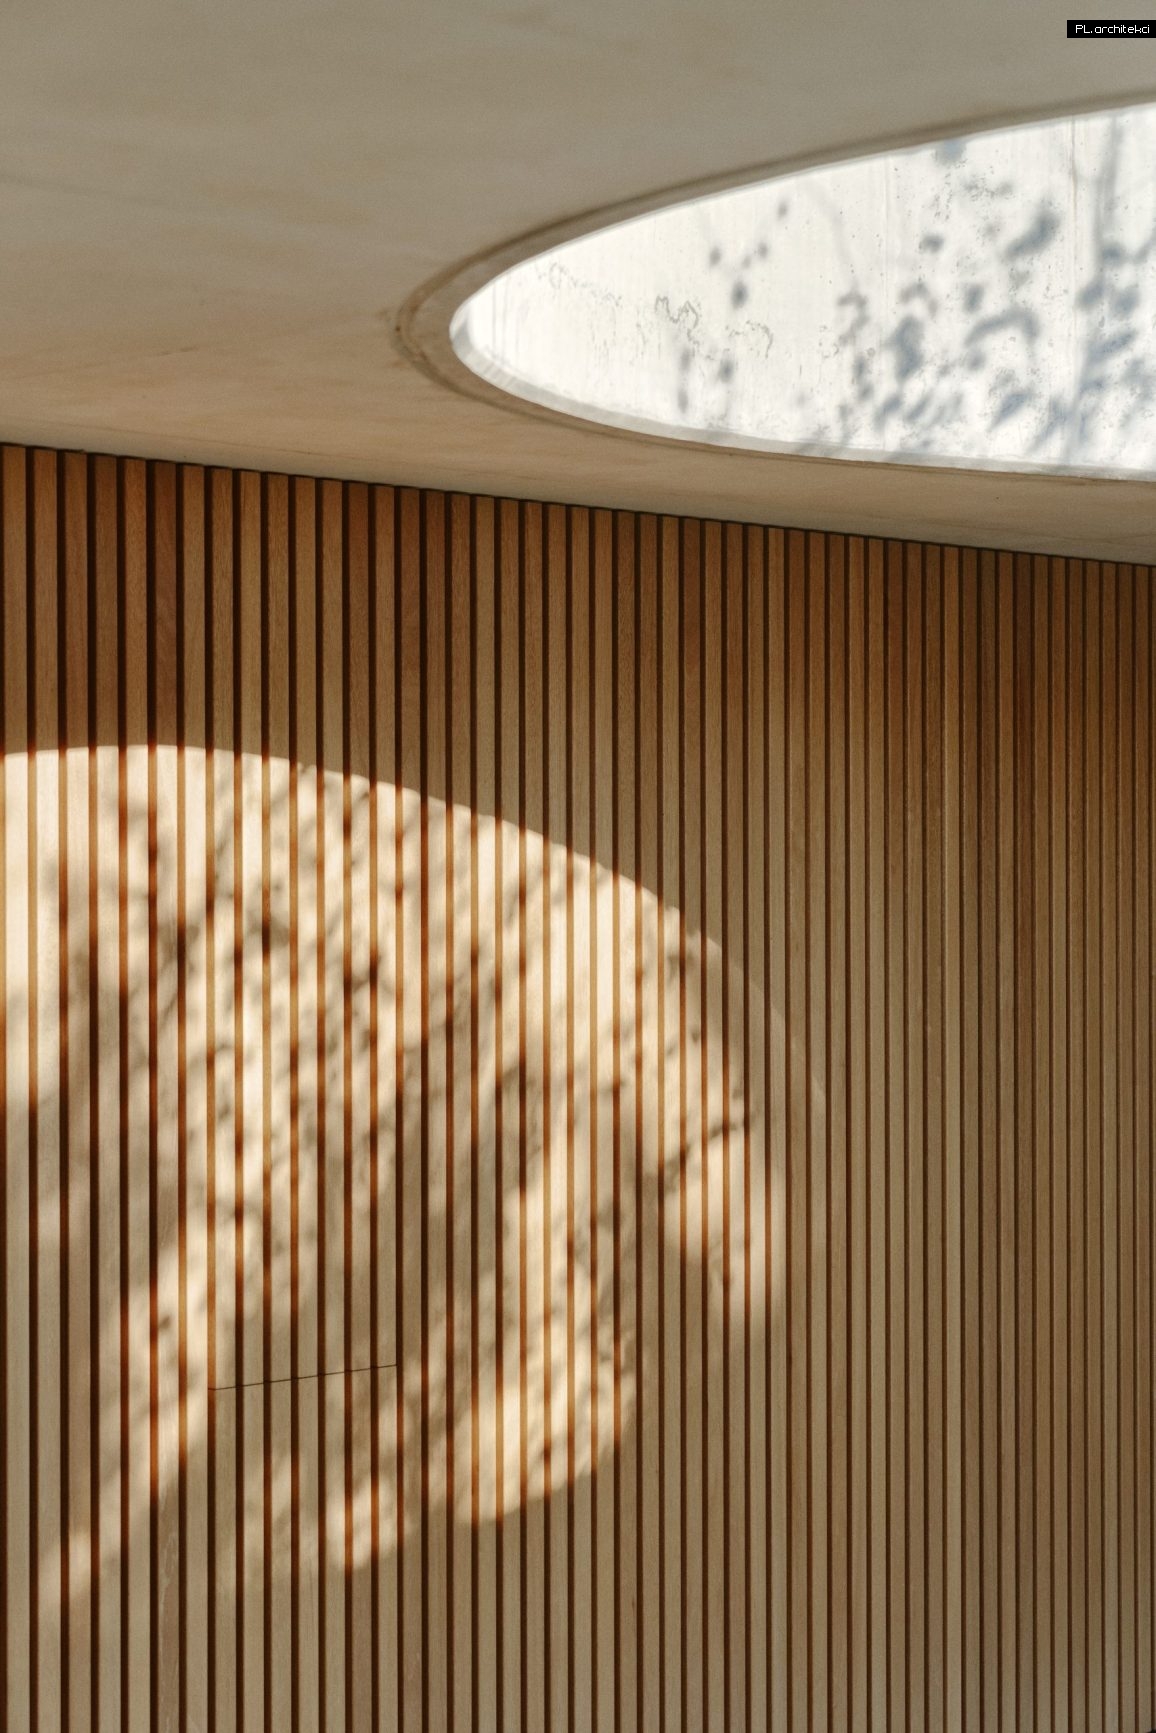 wnętrze domu betonowego przy lesie minimalistyczny design plarchitekci